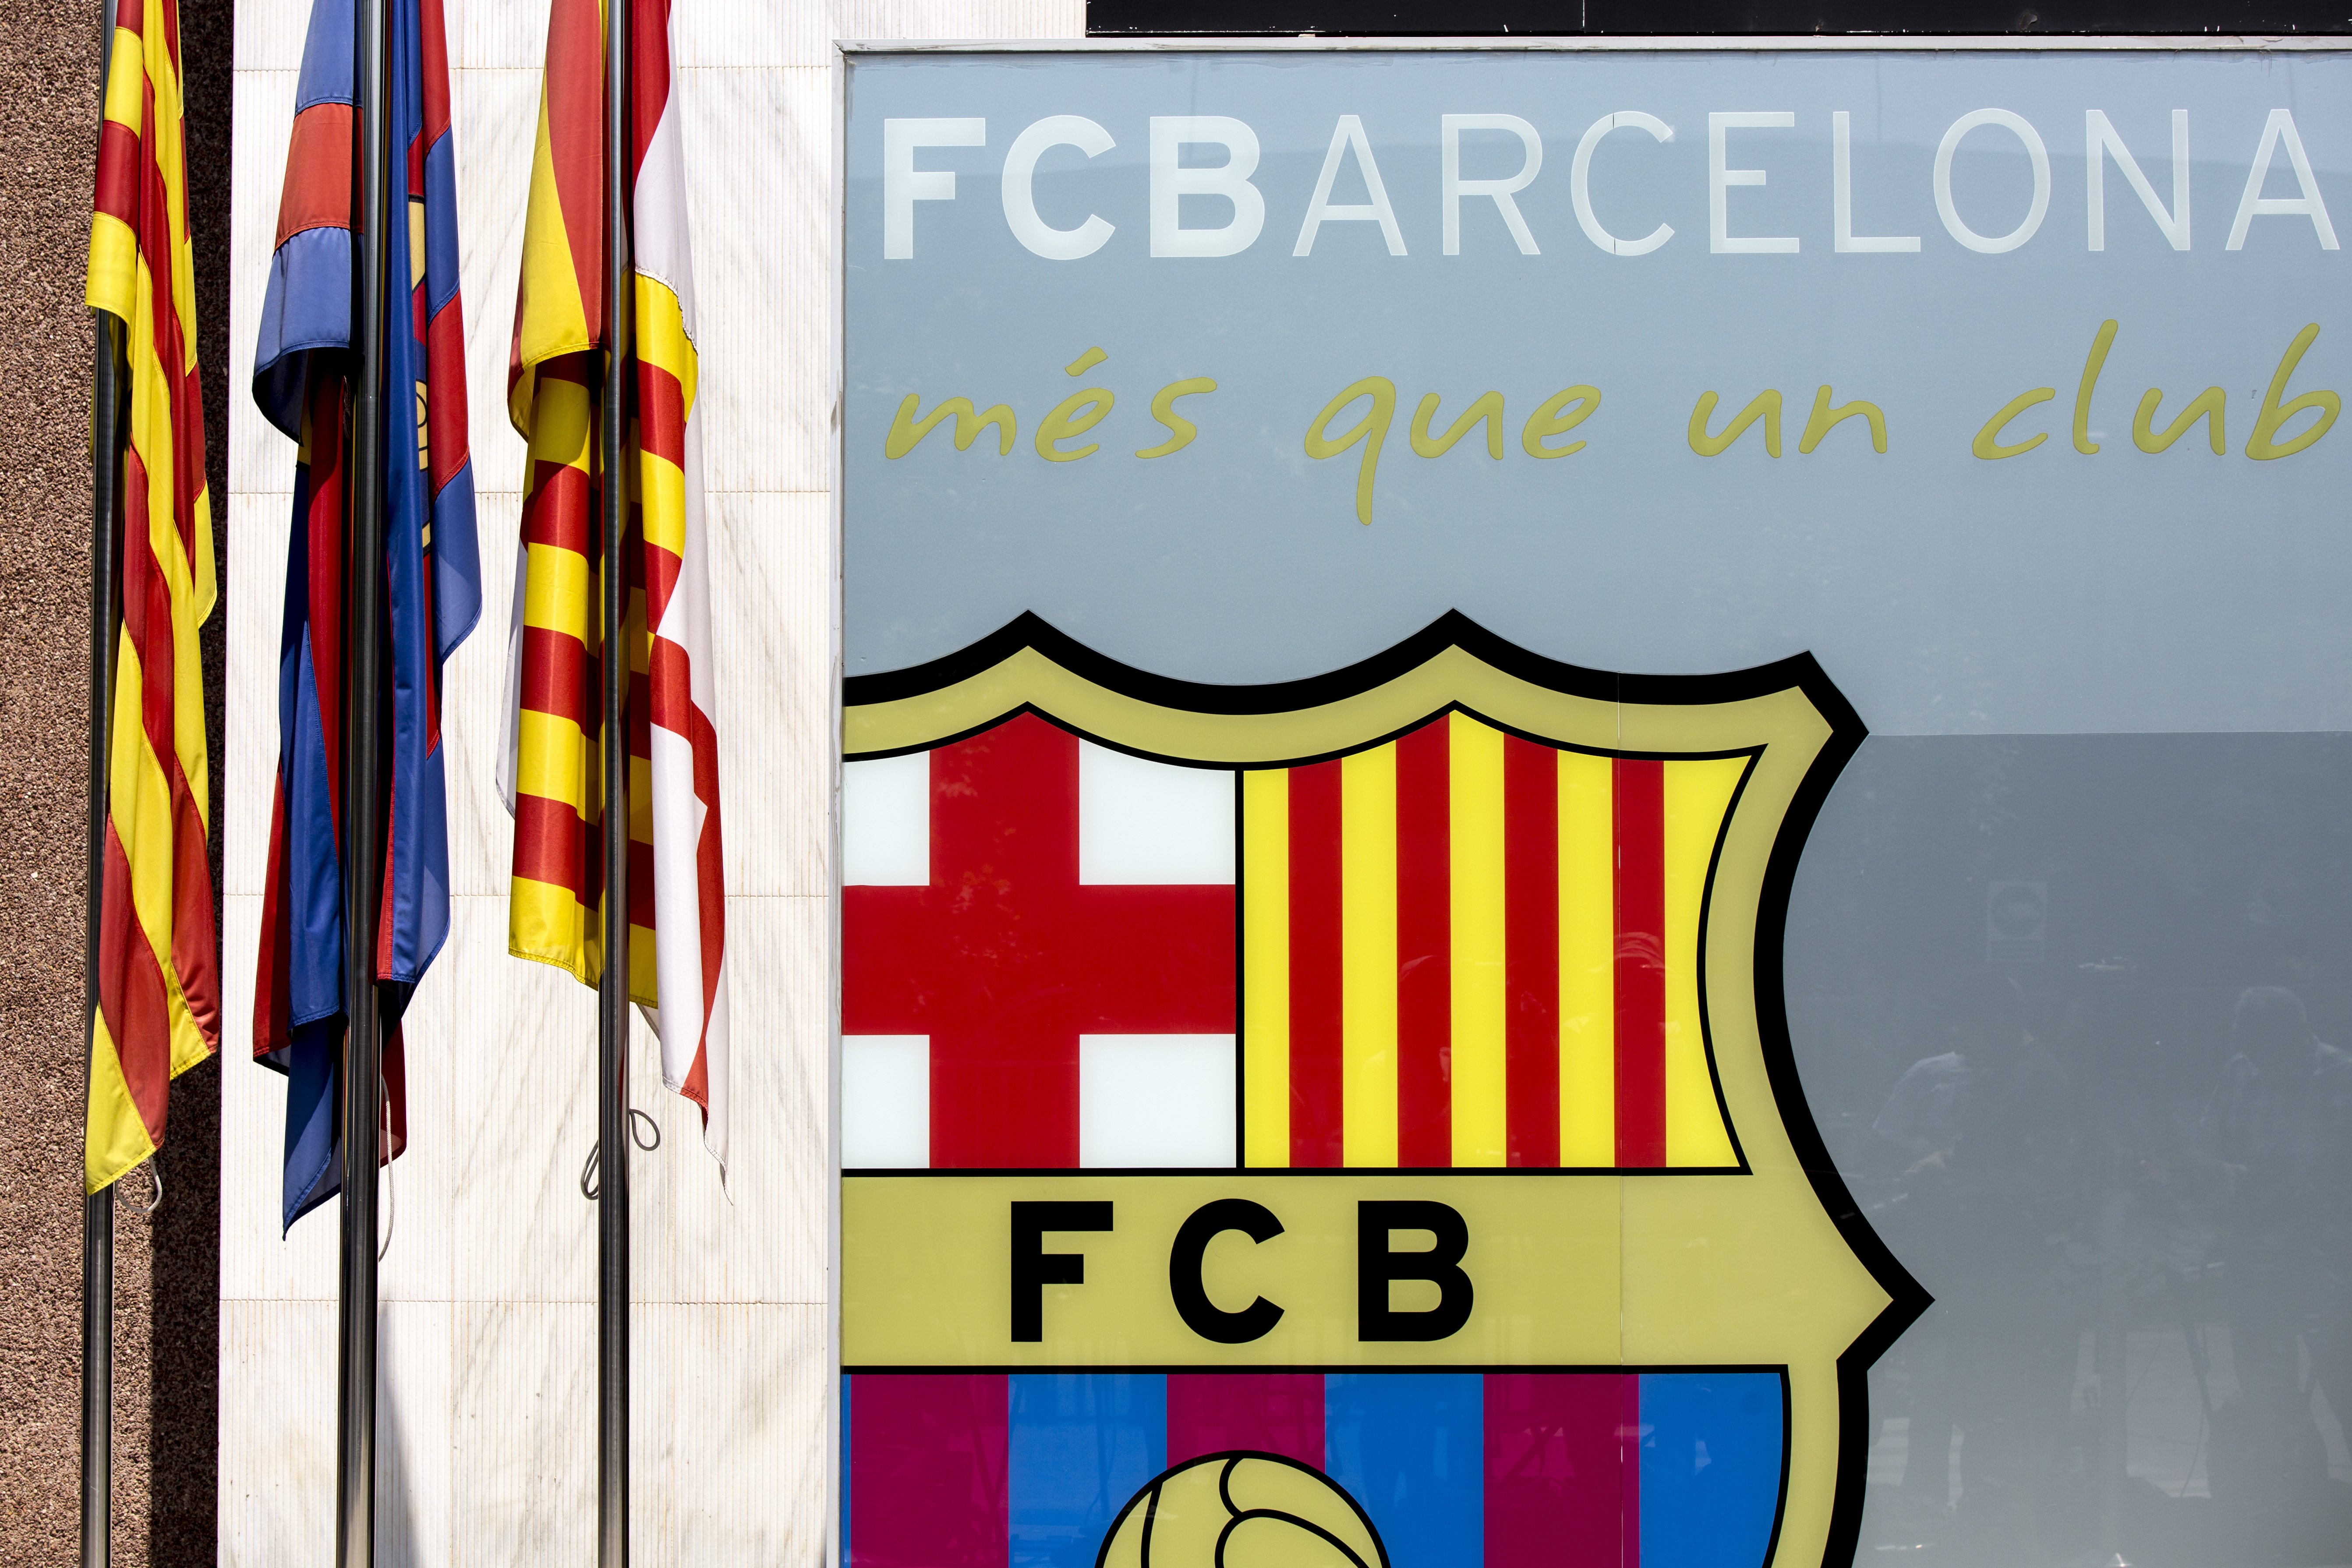 La oposición a la presidencia del Barça carga contra el "engaño" del Seient Lliure